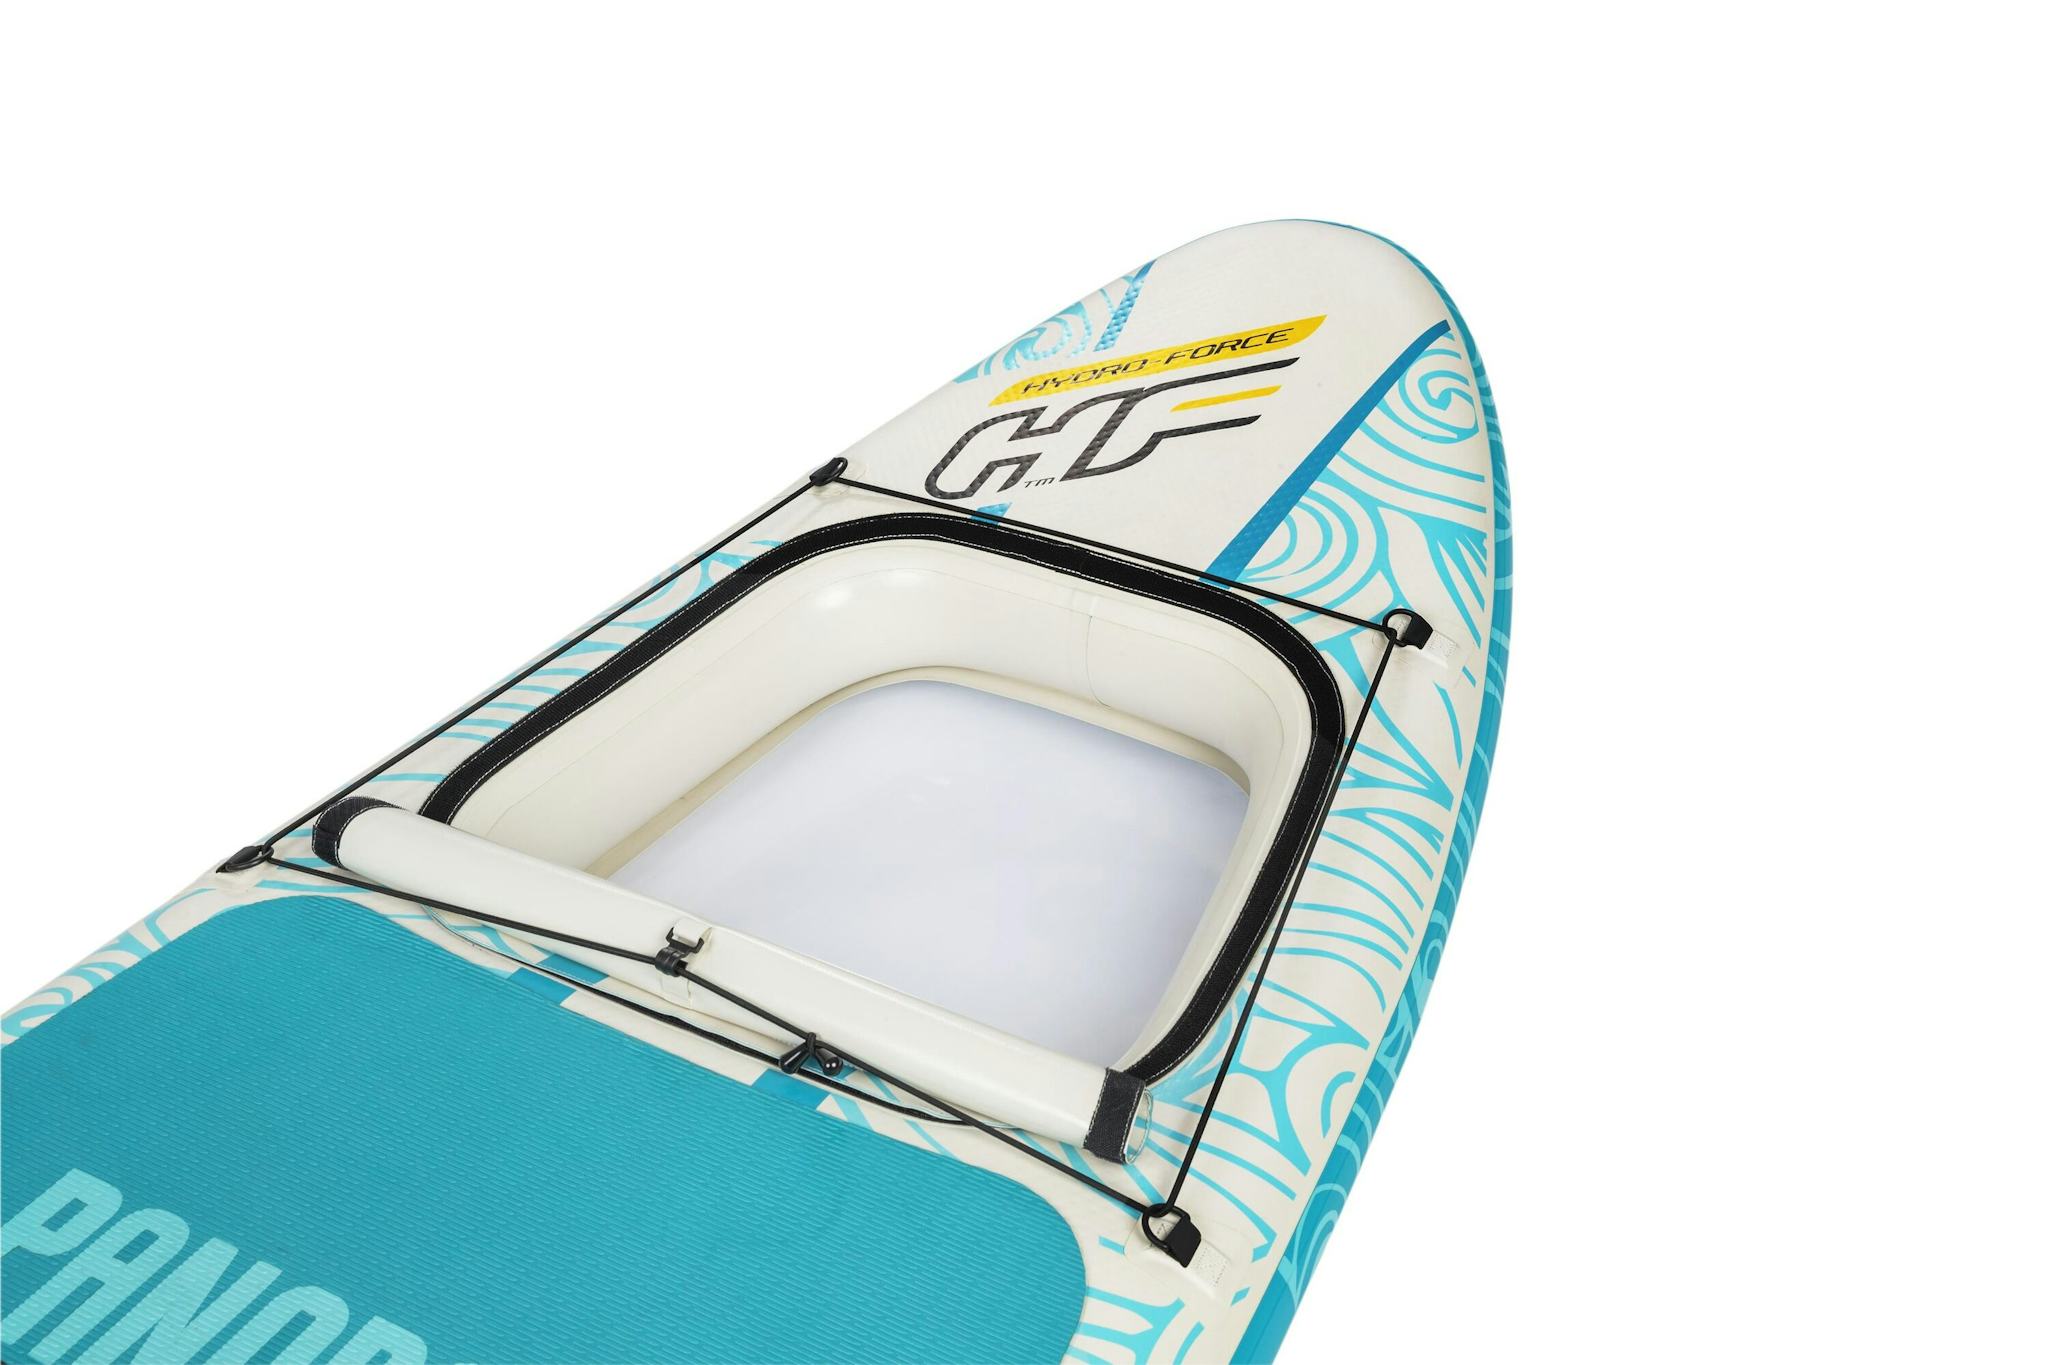 Sports d'eau Paddle gonflable Panorama Hydro-force™, 340 x 89 x 15 cm, 150 kg max, fenêtre transparente, poignées de transport, pompe, leash, sac de transport et pagaie Bestway 5